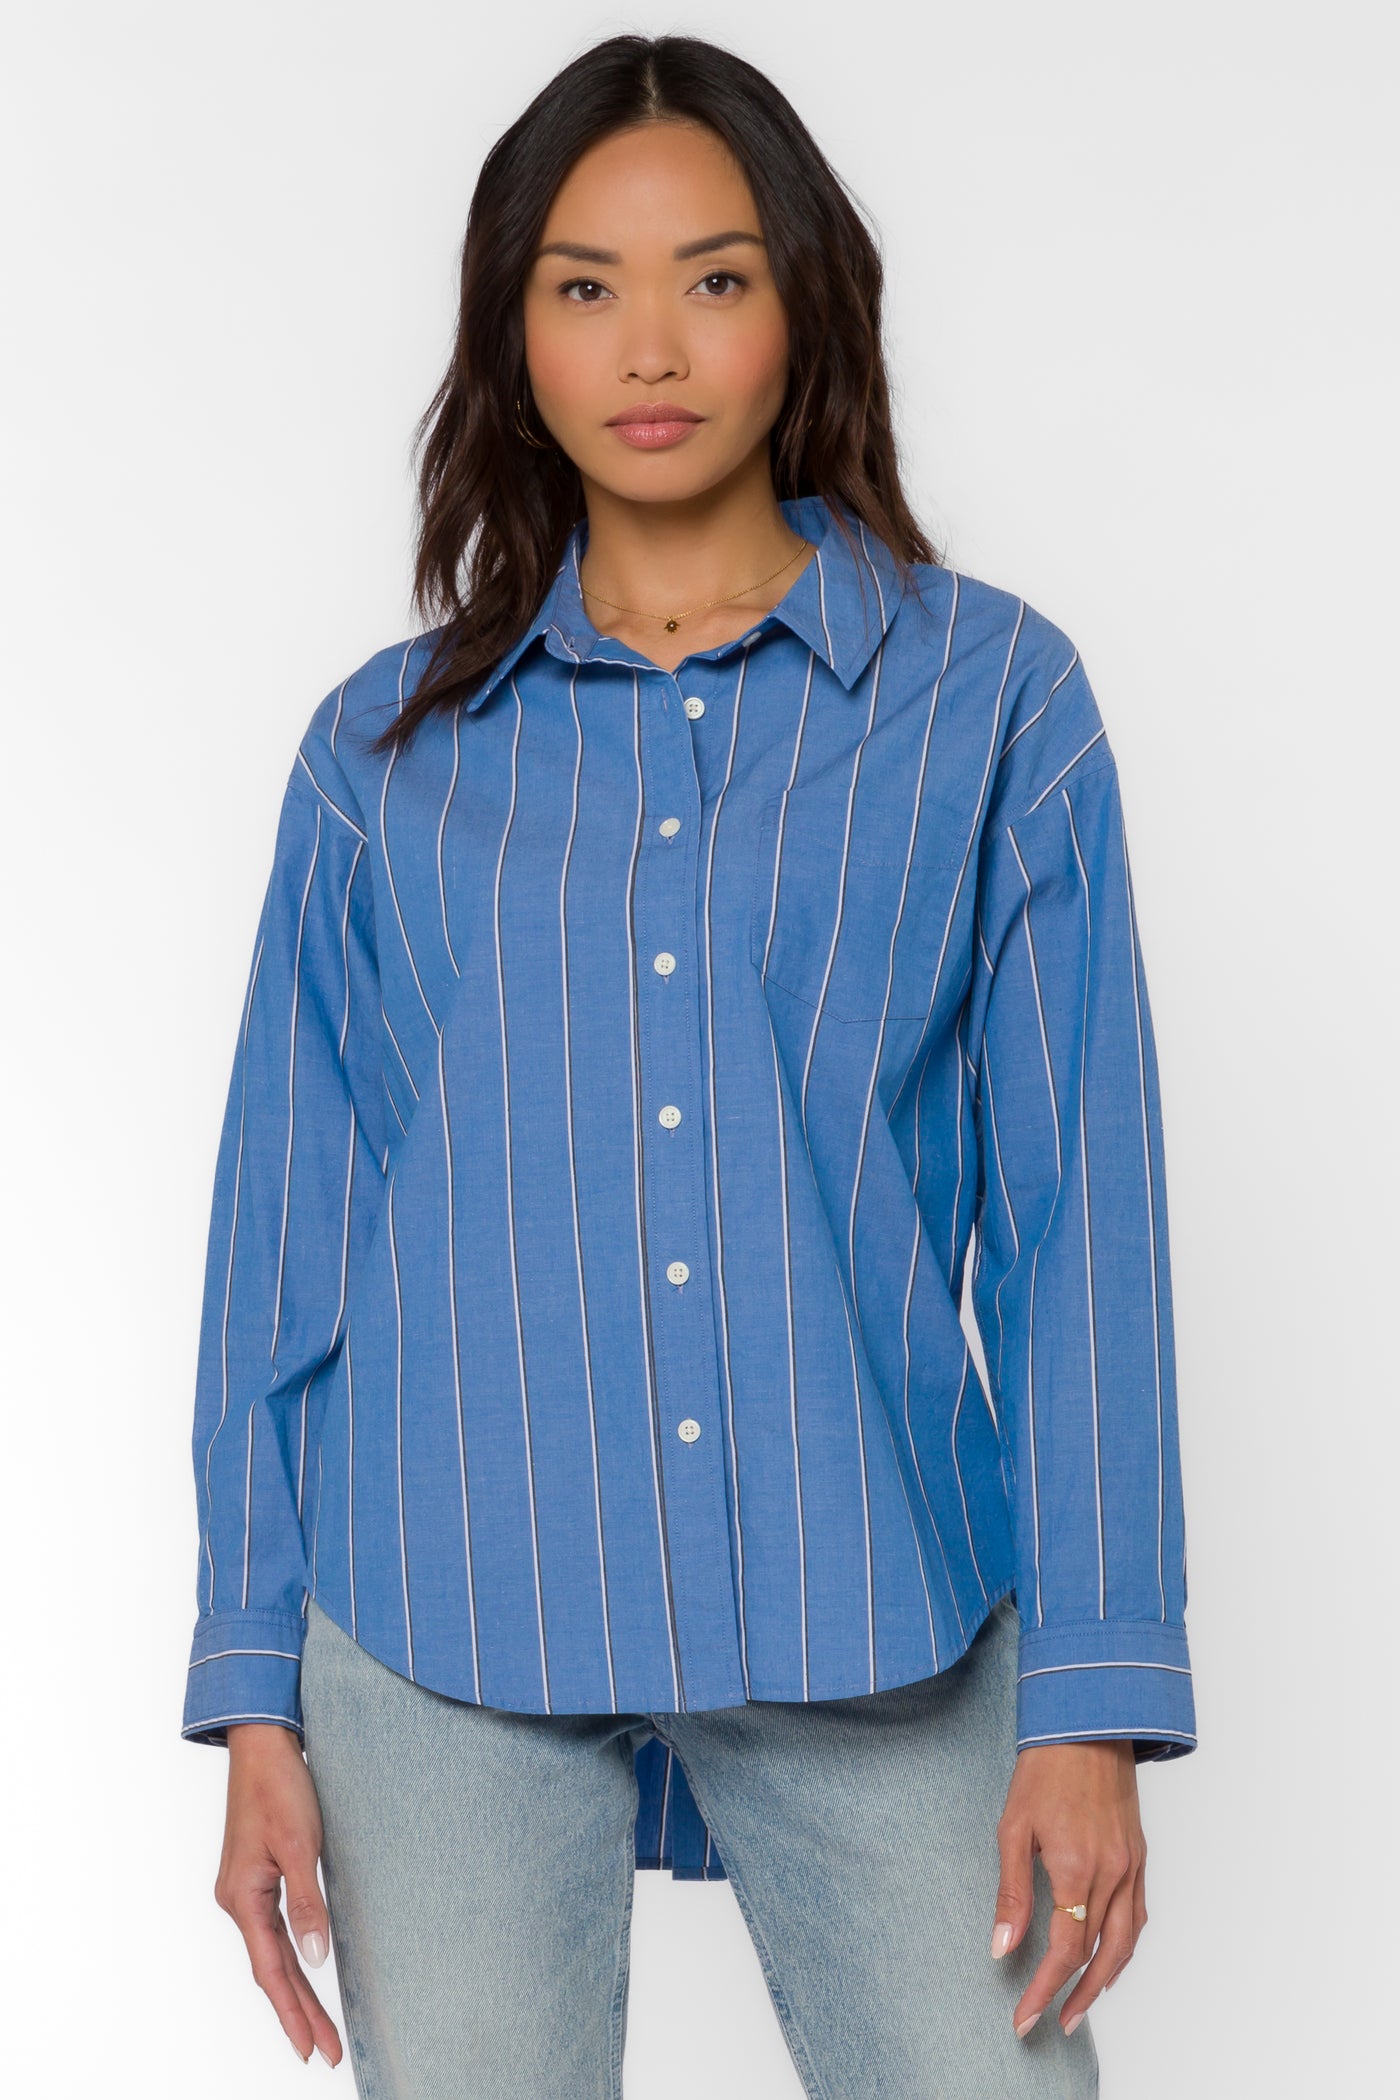 Randall Blue Stripe Shirt - Tops - Velvet Heart Clothing